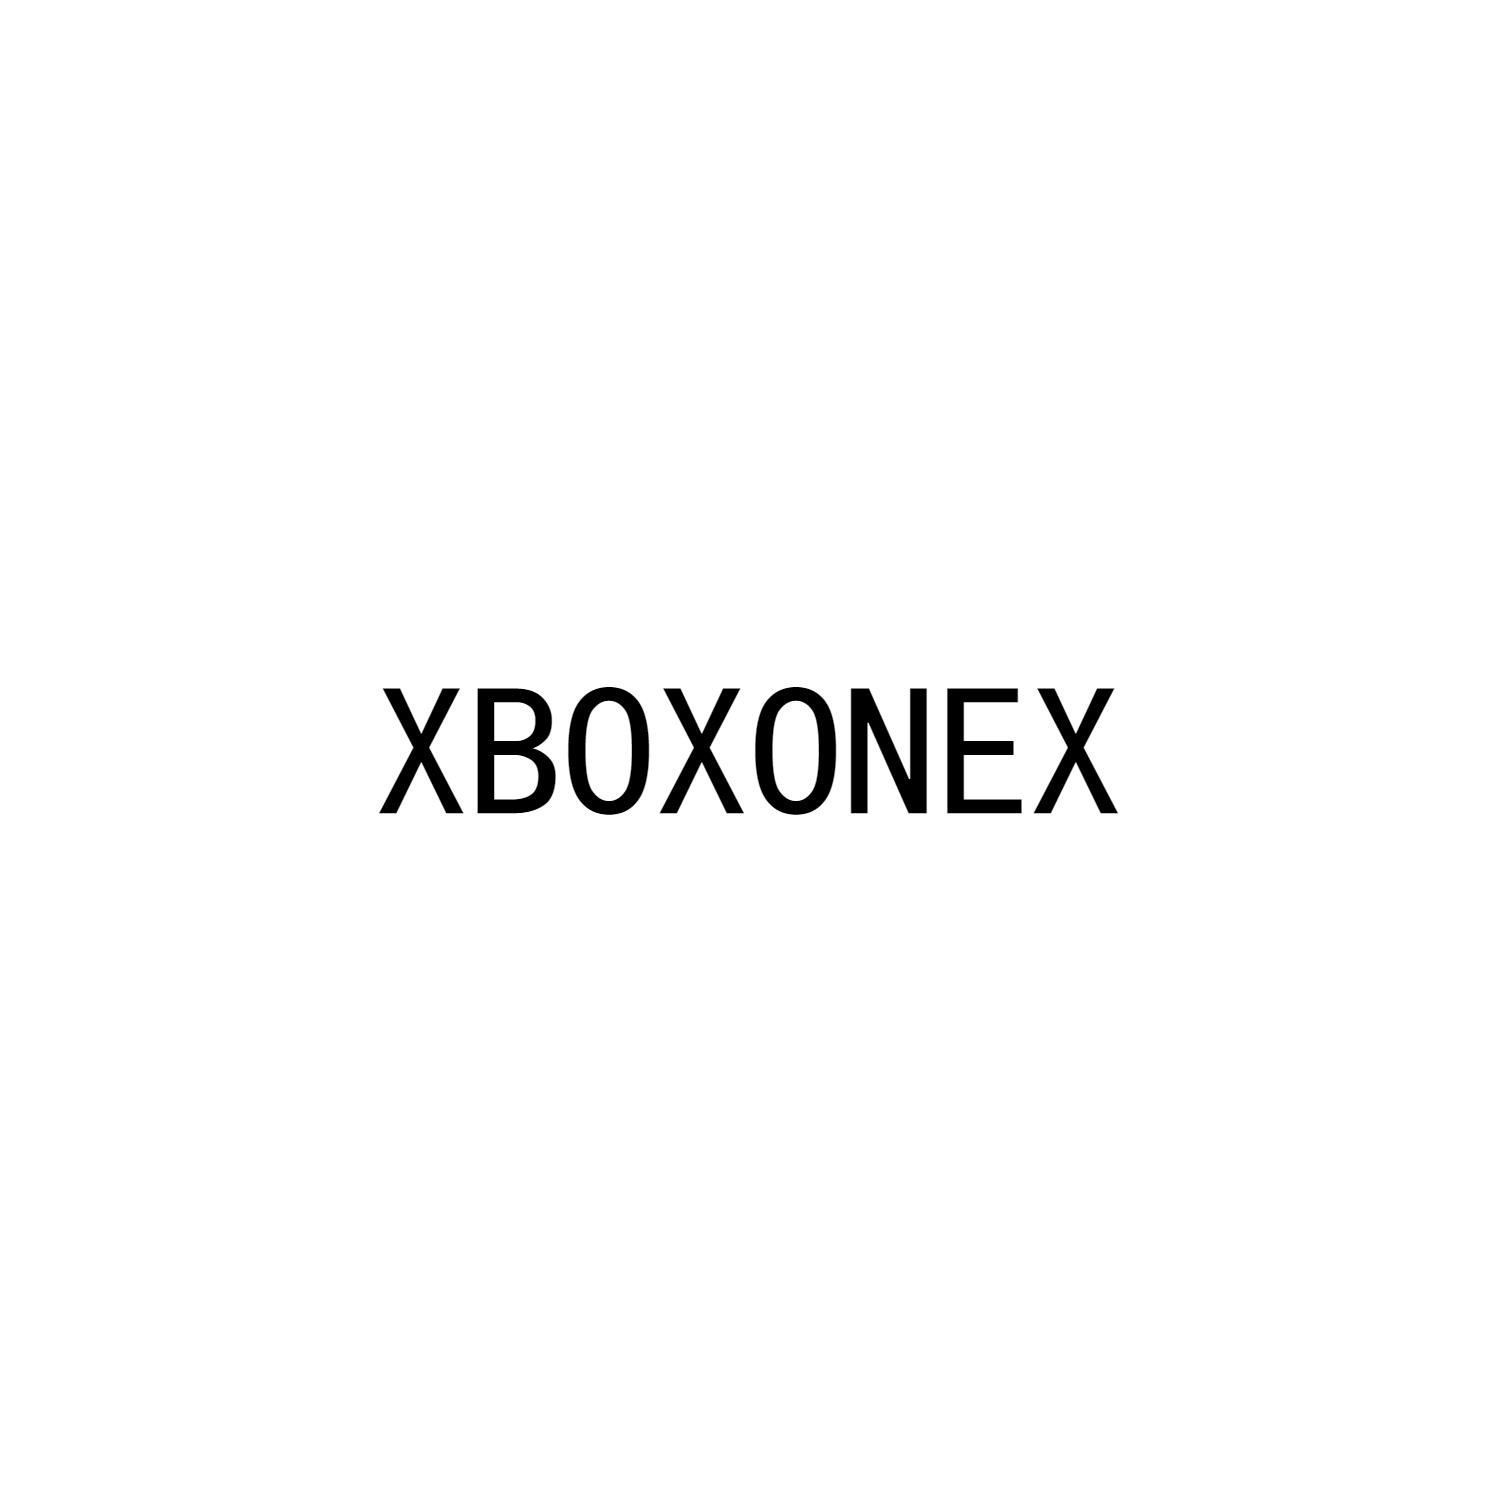 XBOXONEX